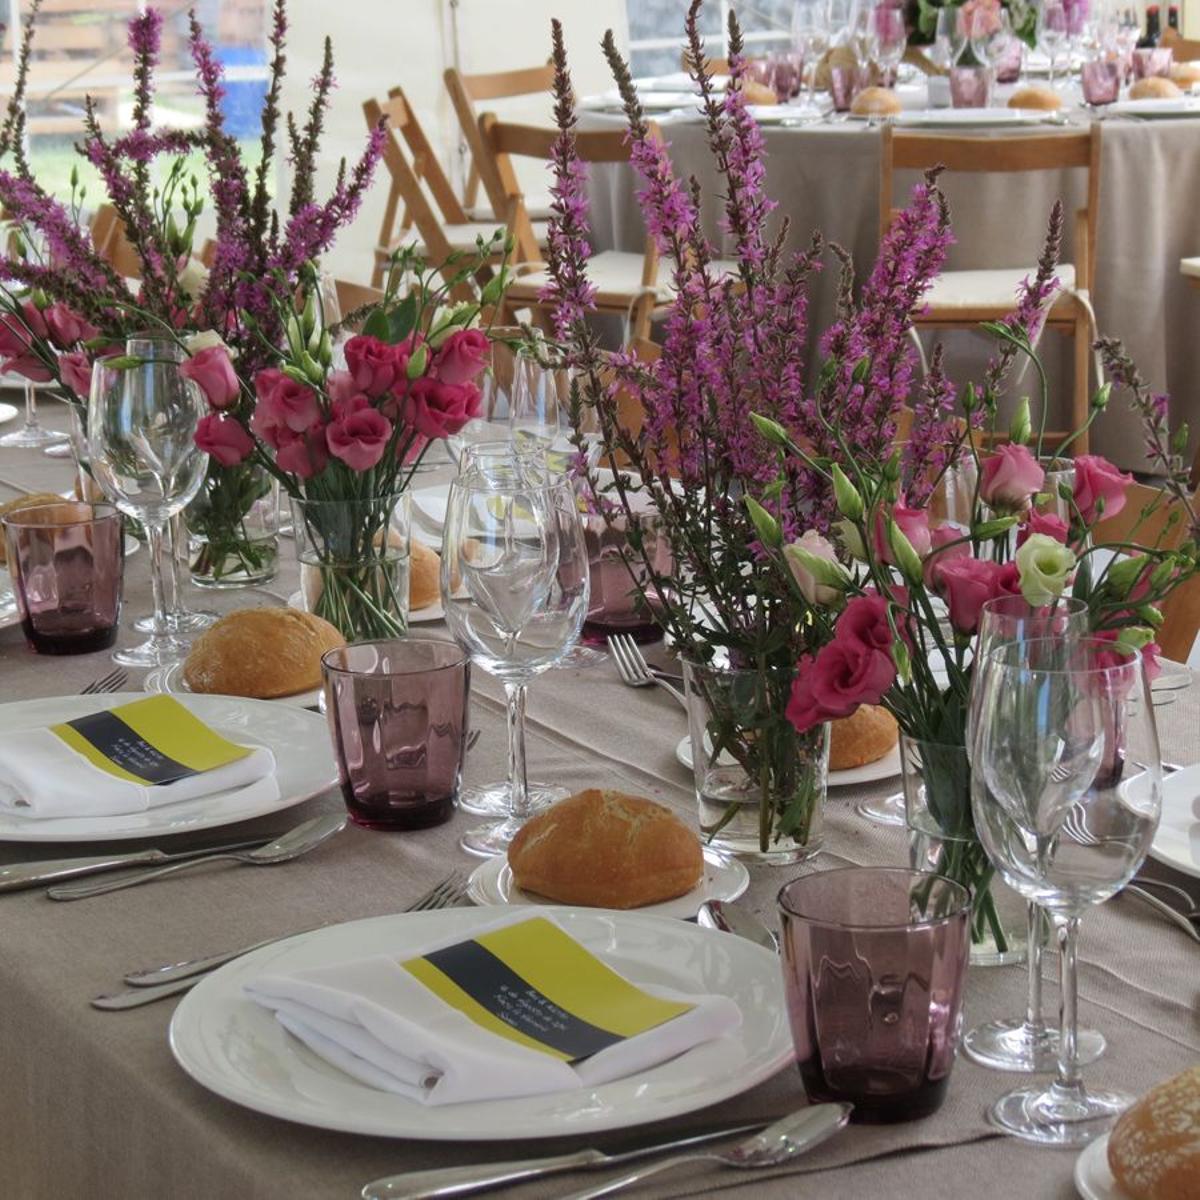 Decorar la mesa del banquete: centros silvestres de lavanda en una mesa de estilo bohemio